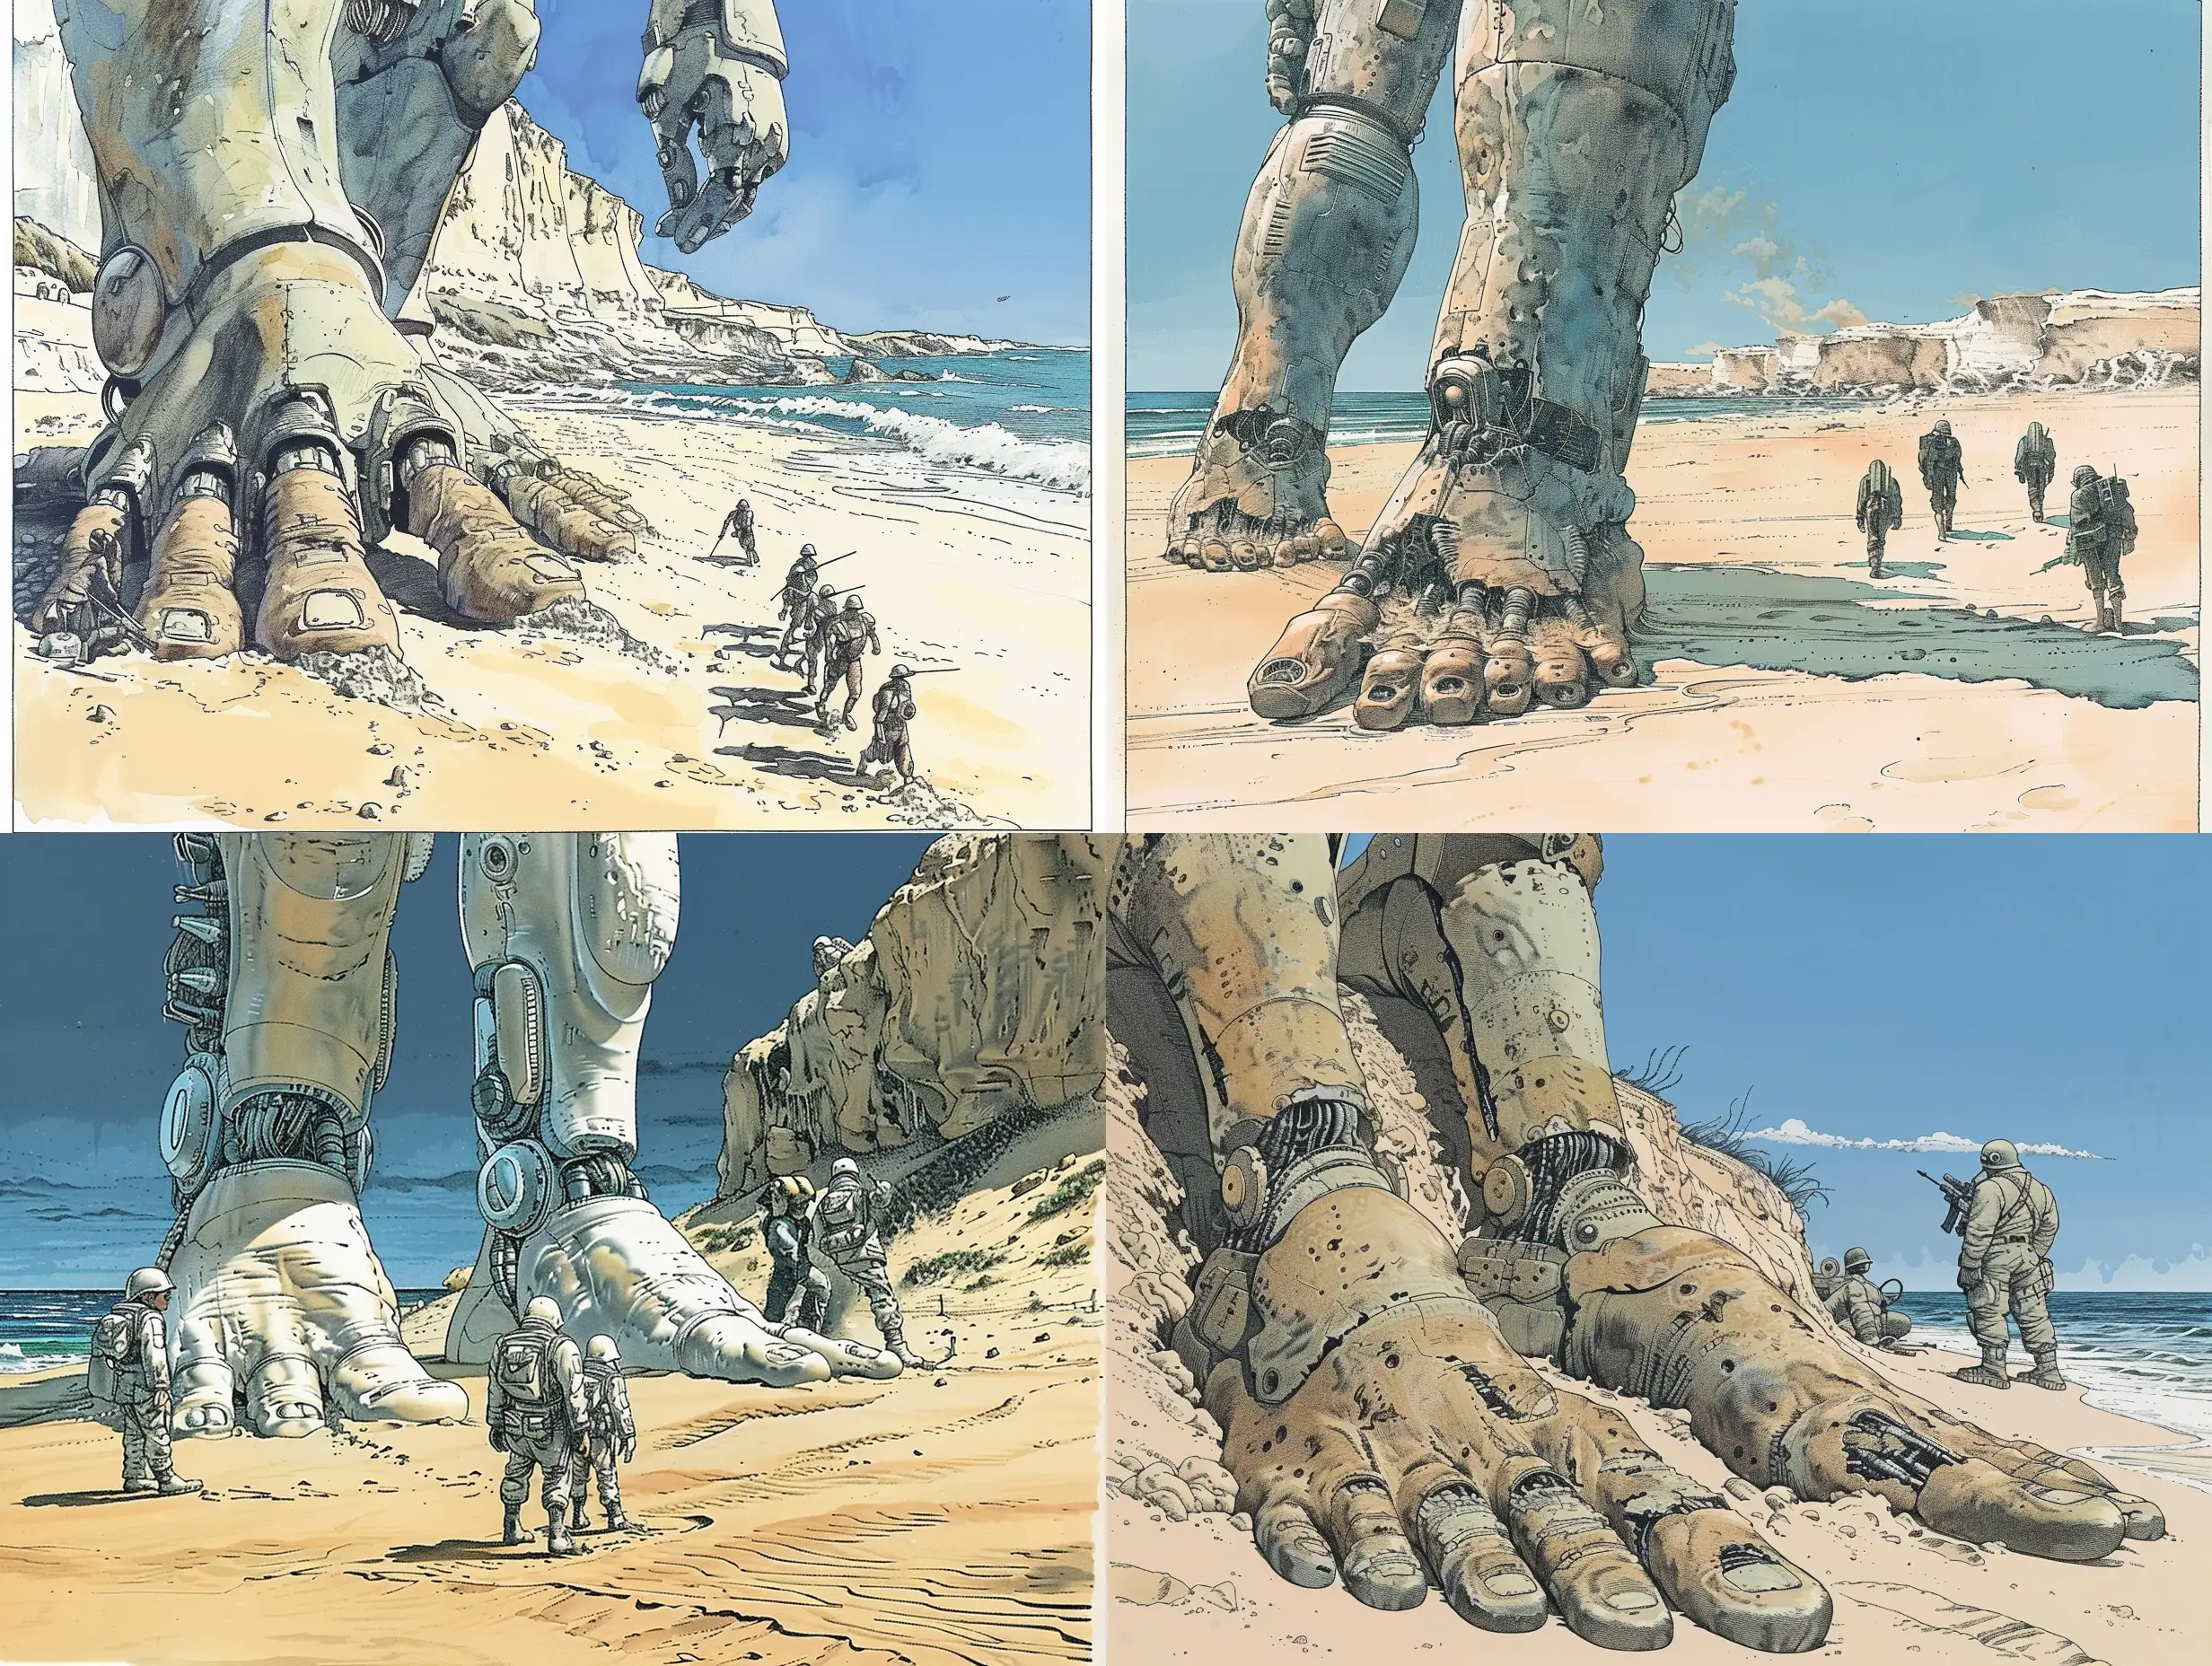 Dessin BD francophone, selon Artist Moebius, Histoire de Science-Fiction: Sur une plage des soldats sci-fi sont acrasés par des pieds géants. C'est au bord de la mer, dunes de sable,